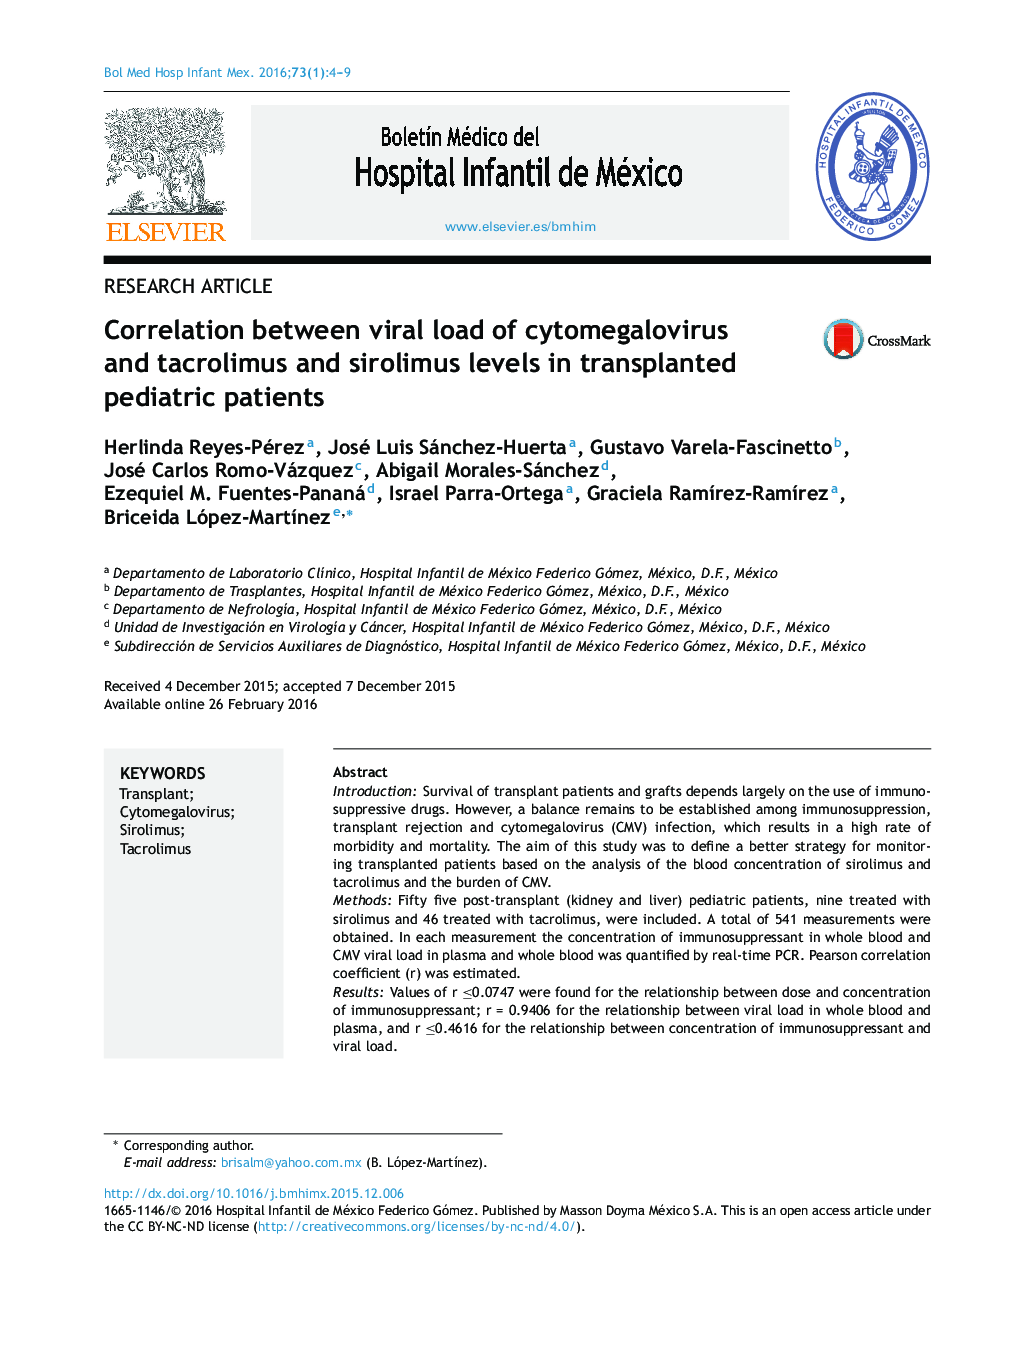 ارتباط بین بار ویروسی سیتومگالوویروس و سطوح تاکرولیموس و sirolimus در کودکان بیمار عمل پیوندی